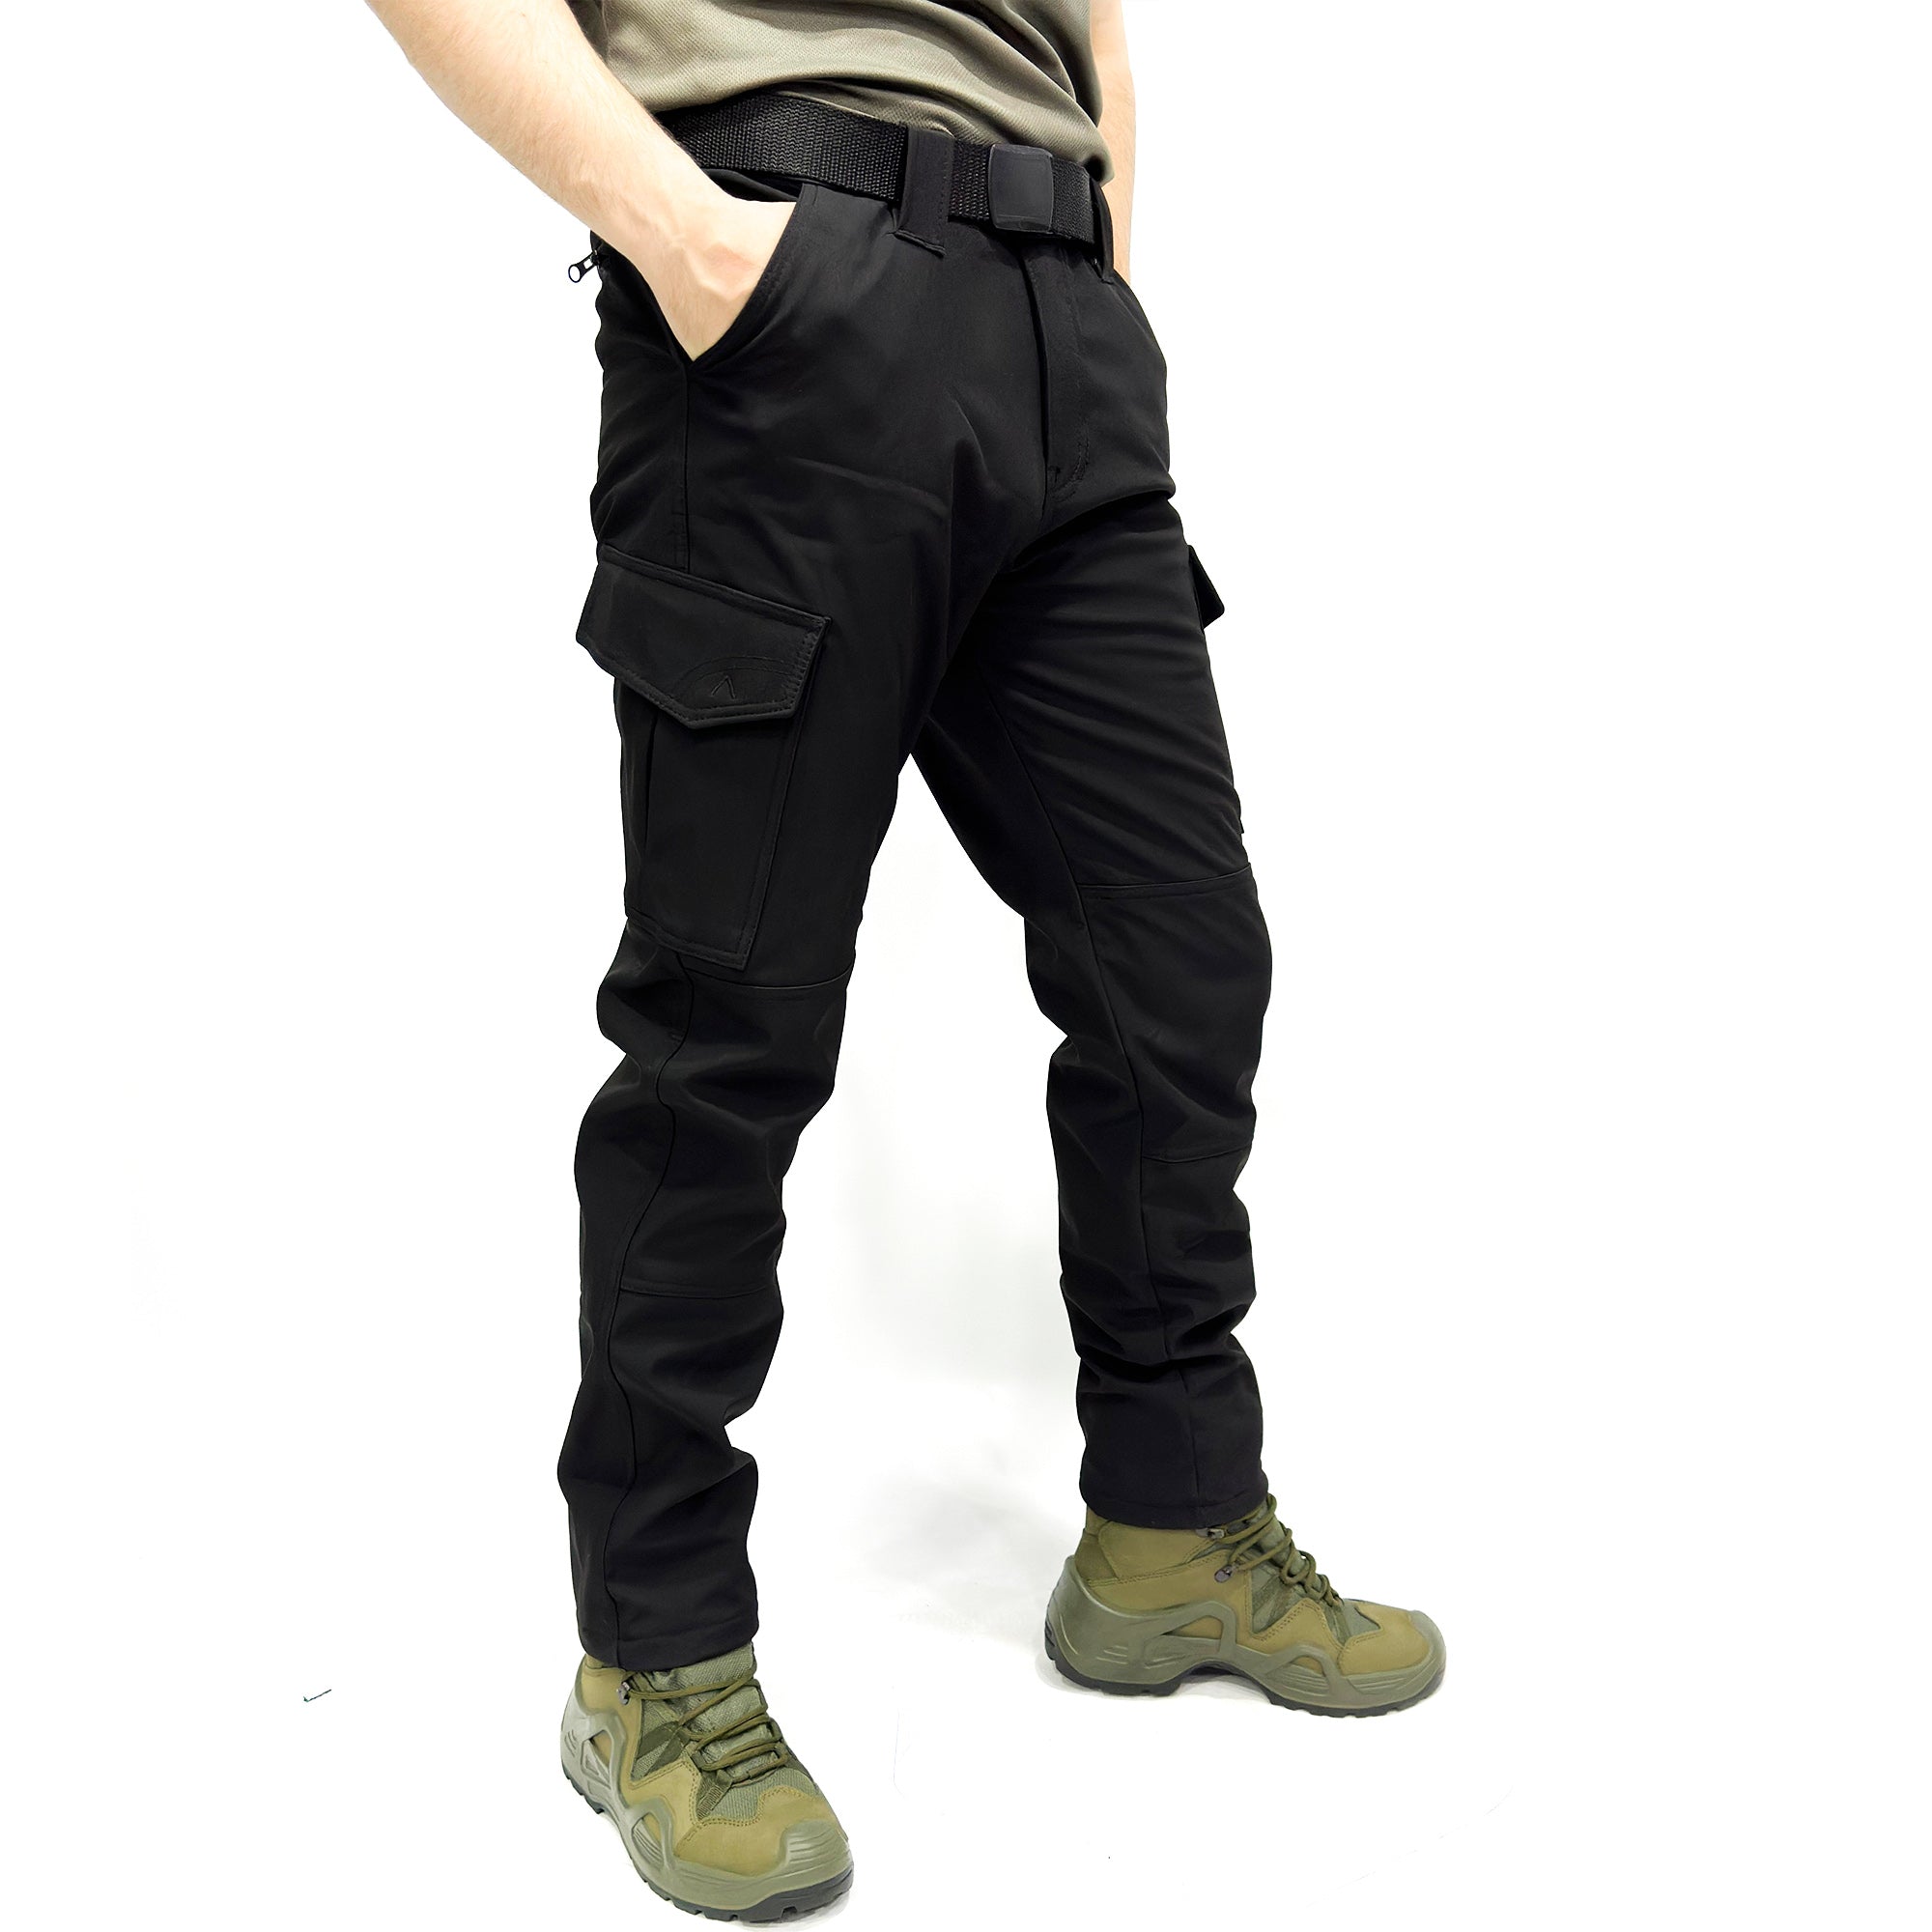 Wind-Waterproof Black Softshell Pants - Fleece Inside